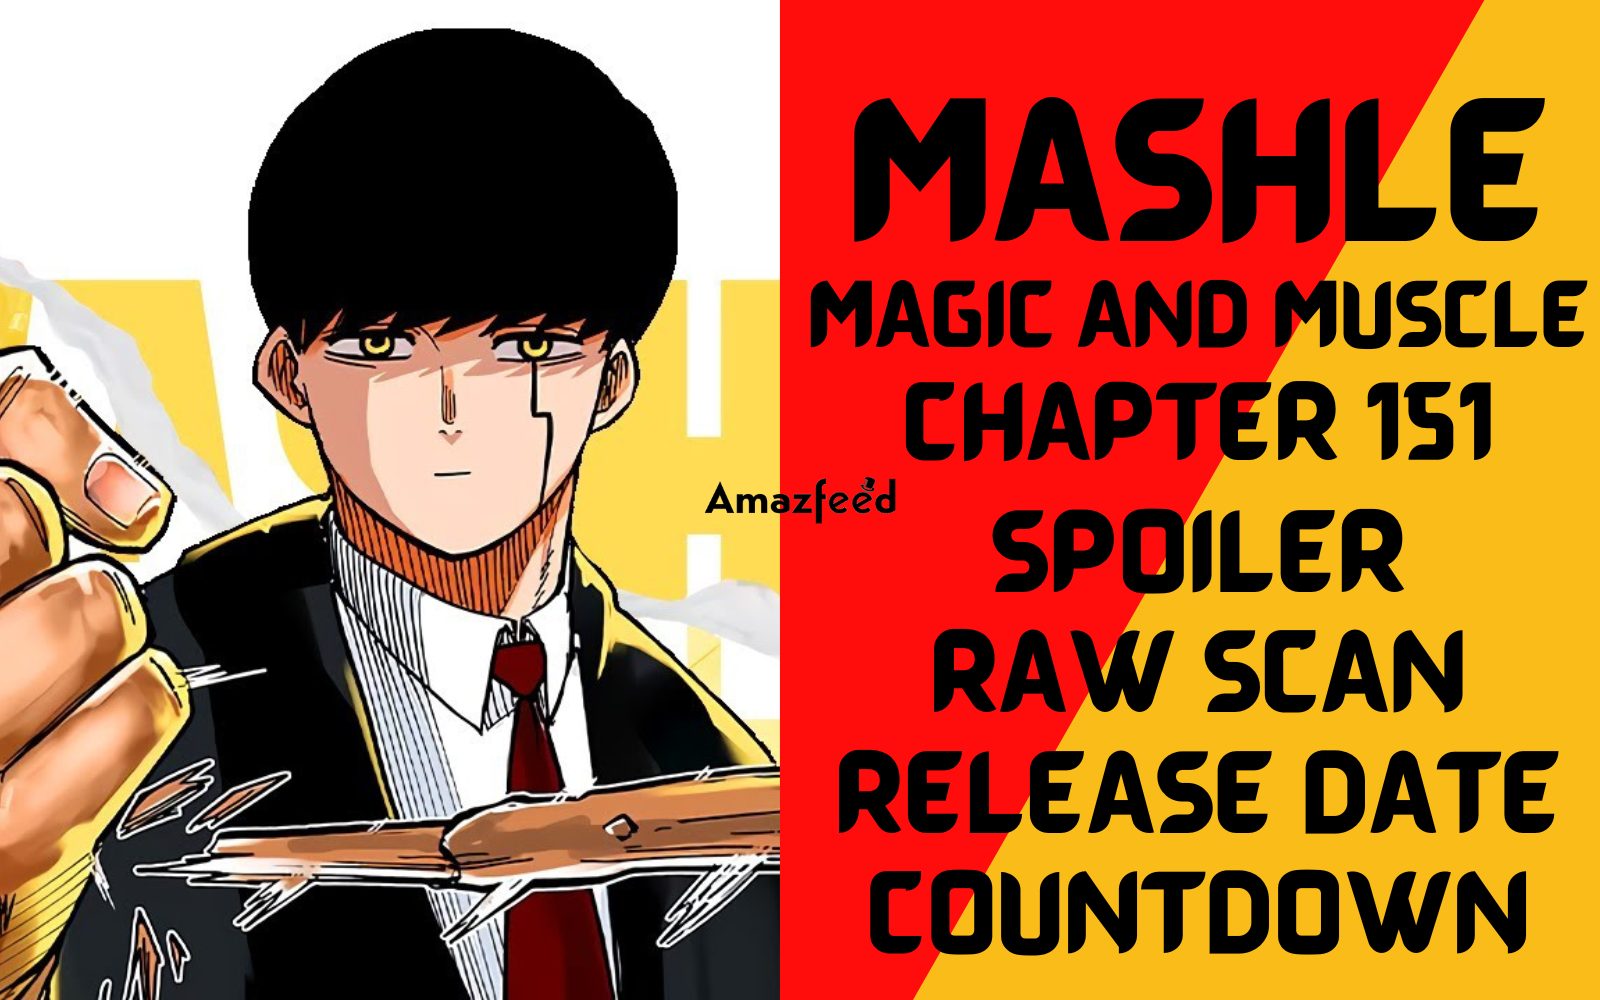 Read Mashle Manga on Mangakakalot